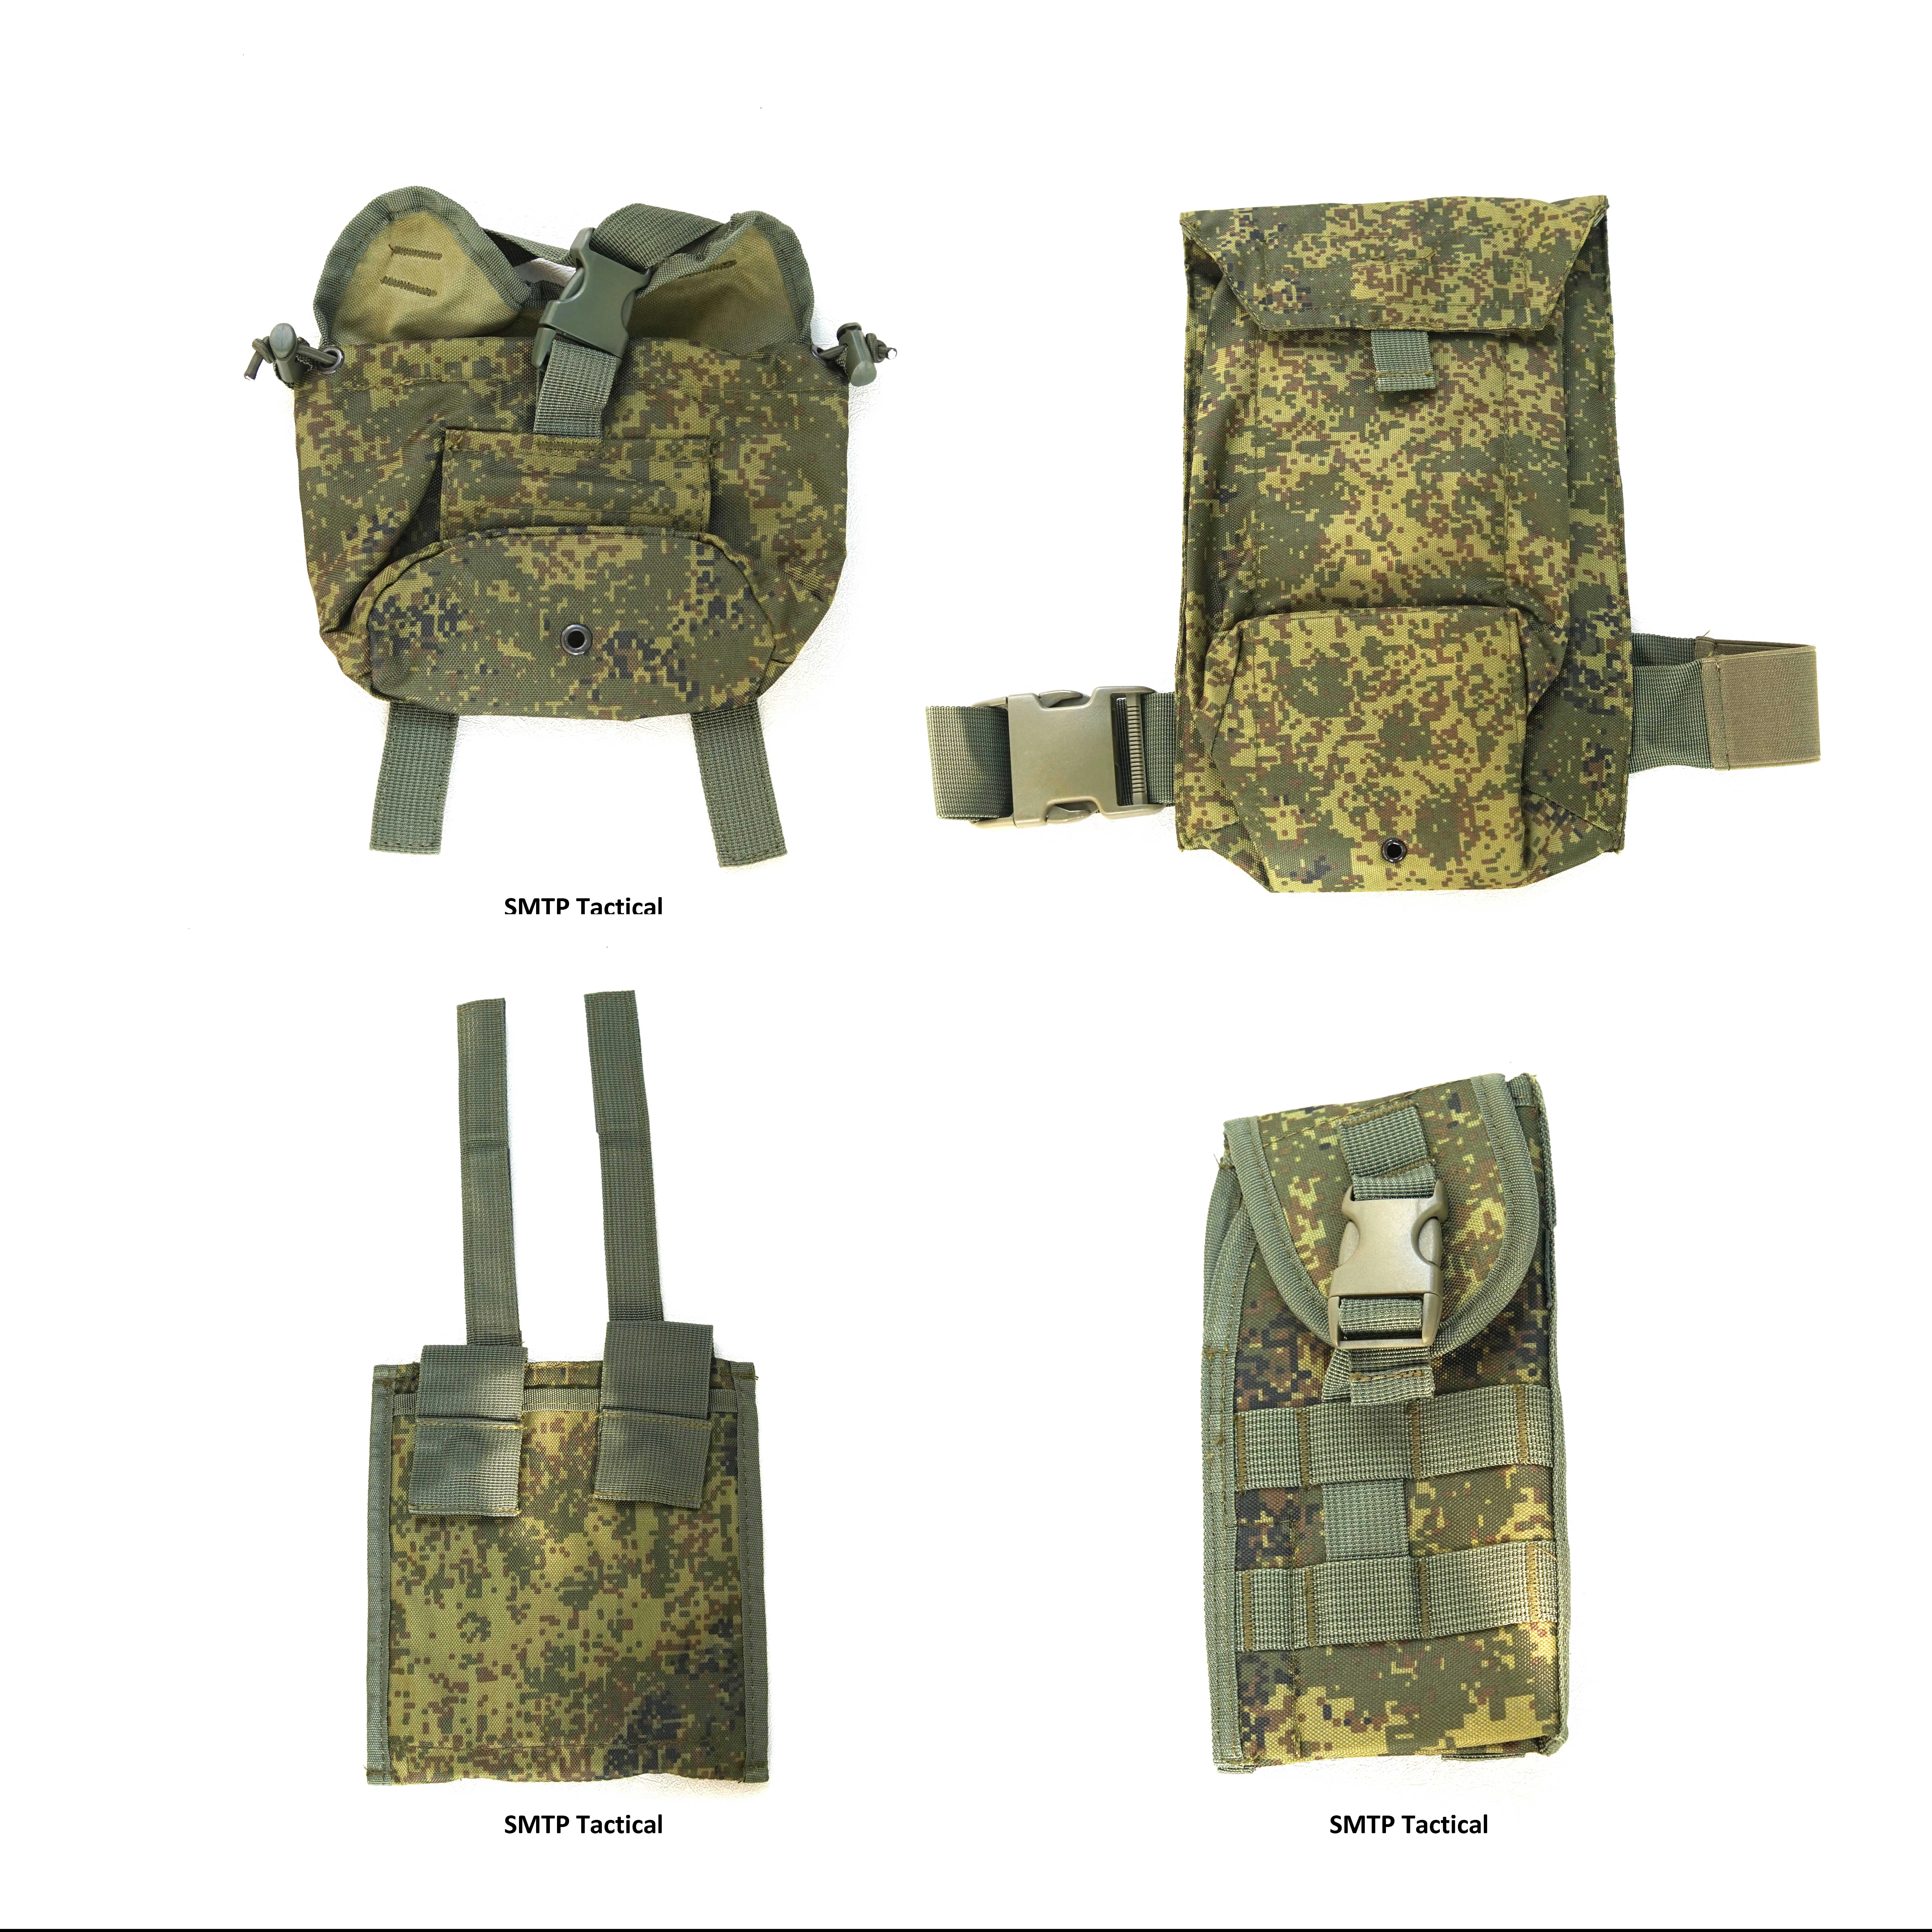 

SMTP E117 Russian 6sh117 magazine pouch emr Grenade bags Russian 6sh117 Vest little green man 7L buttpack bag emr MP443 Holster